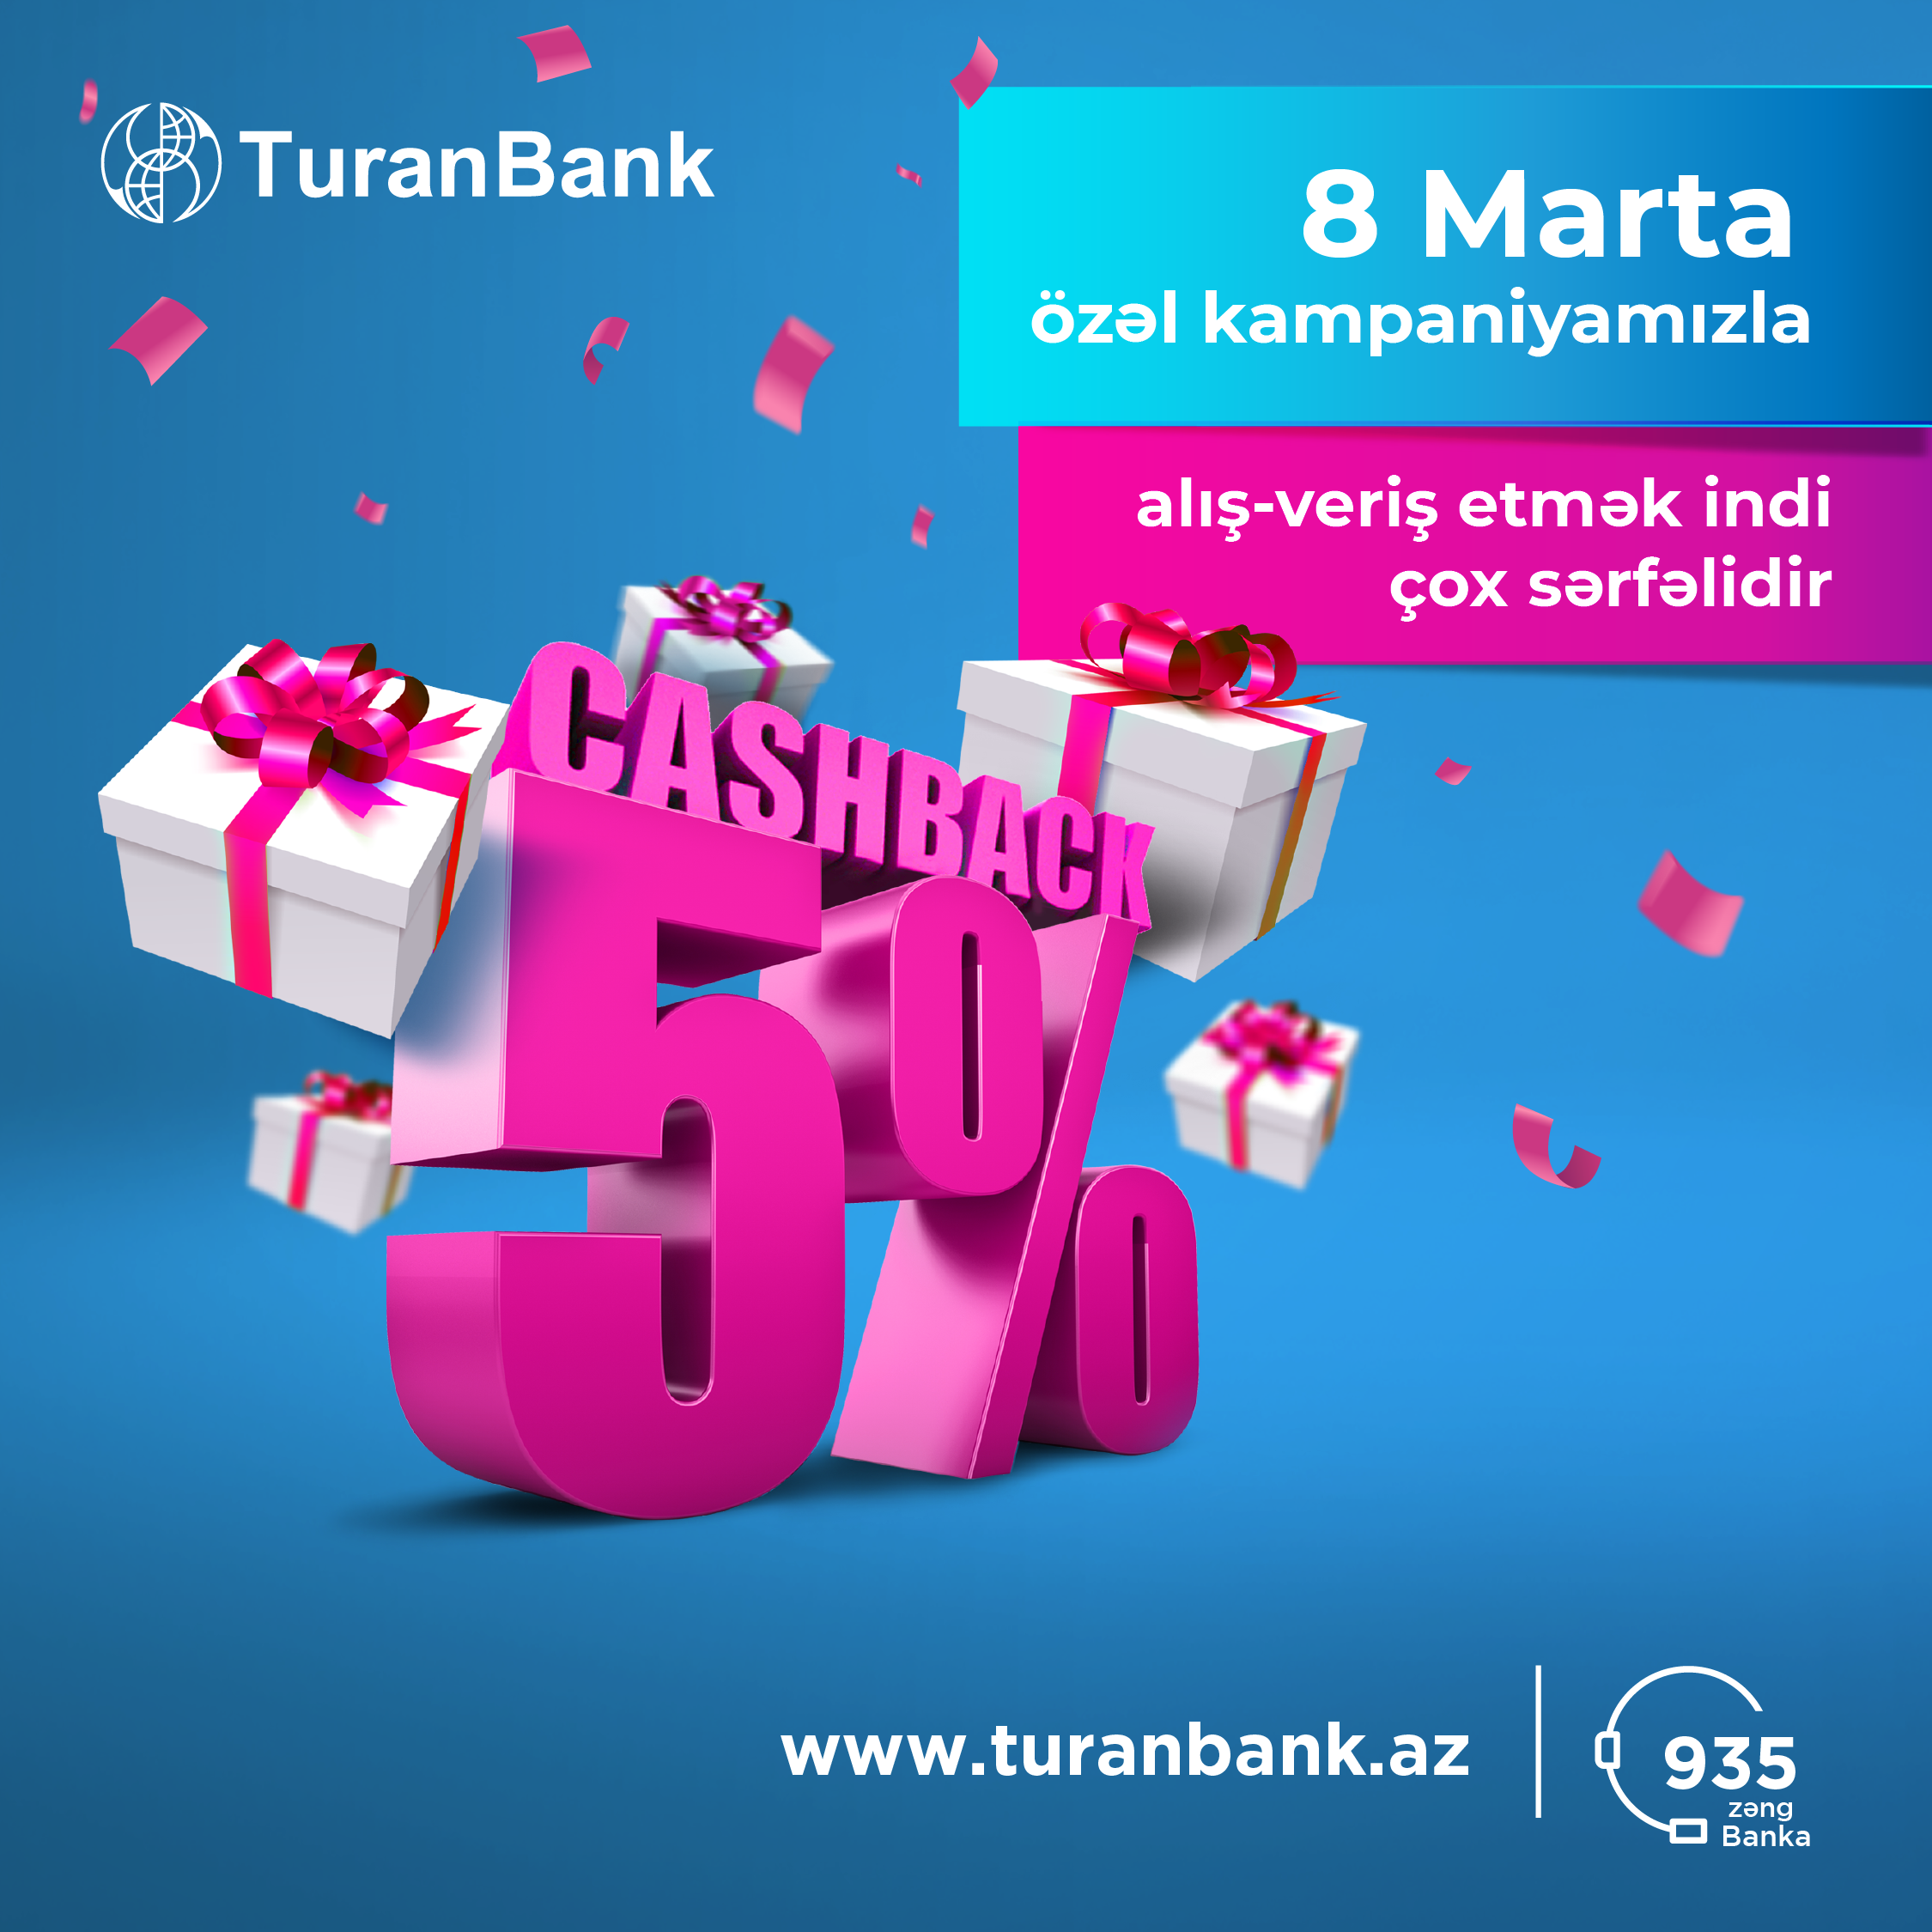 TuranBank kartları ilə alış-veriş etmək daha çox qazanc gətirəcək